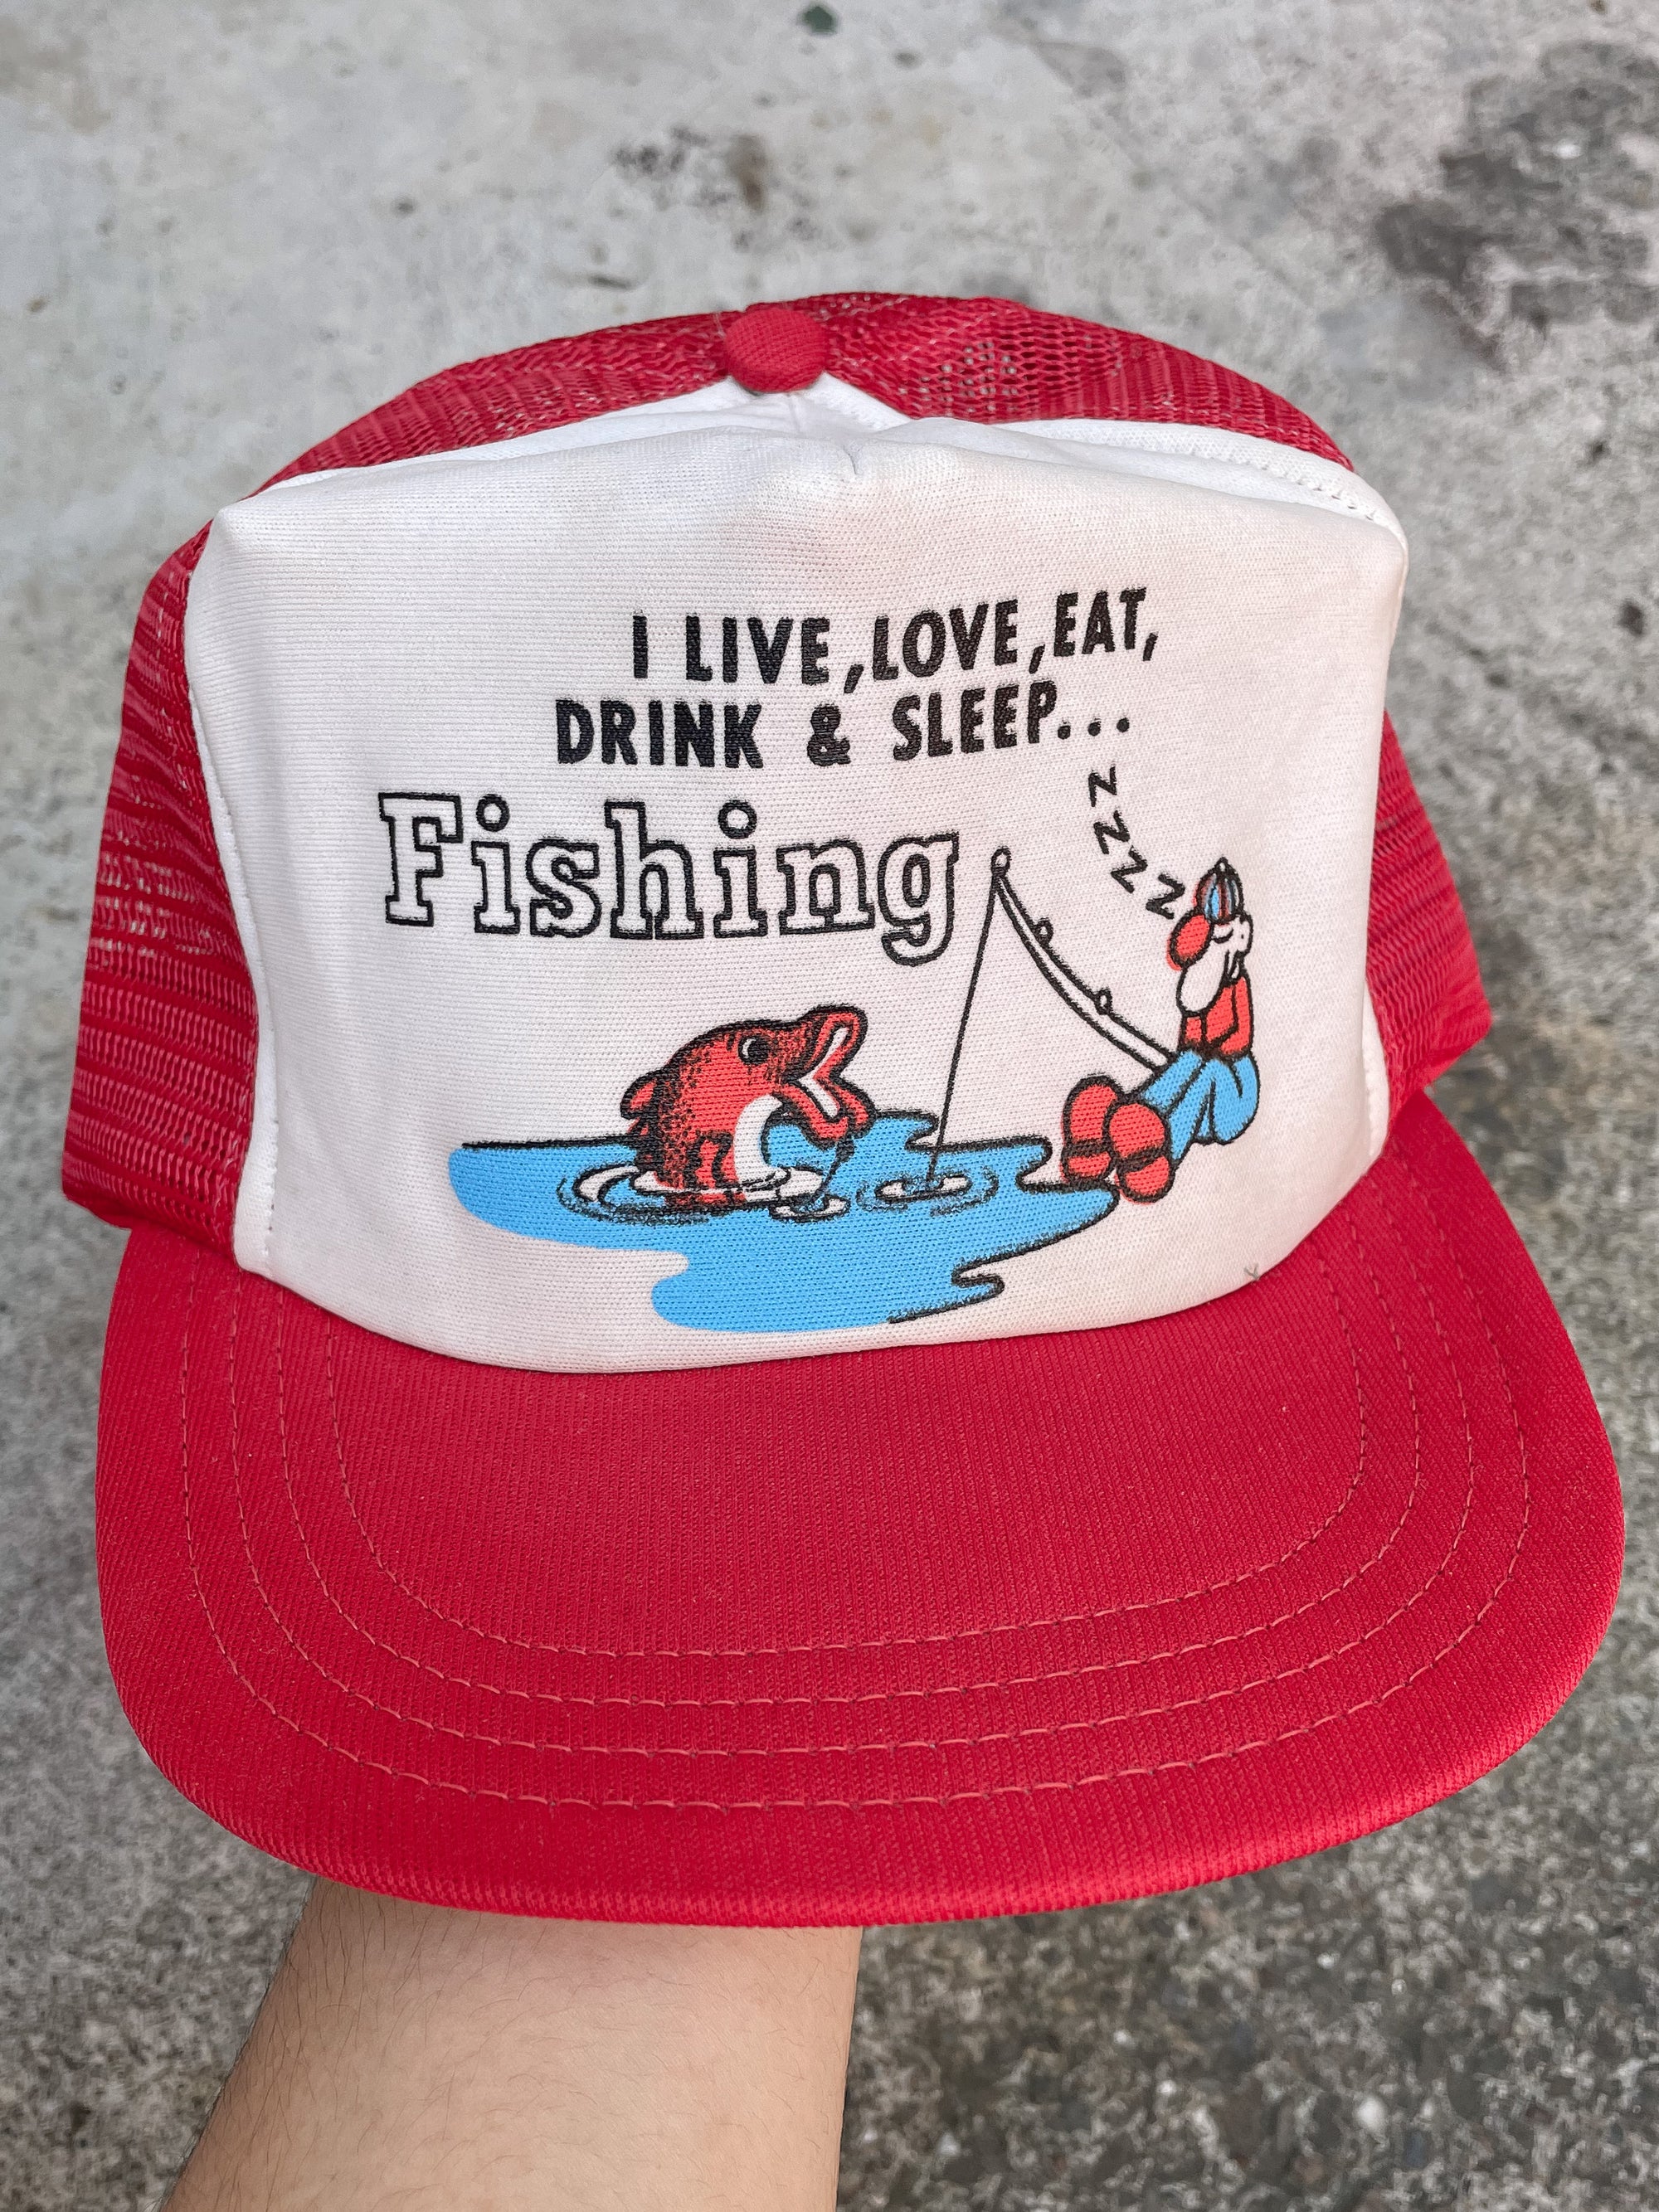 1980s “Fishing” Trucker Hat